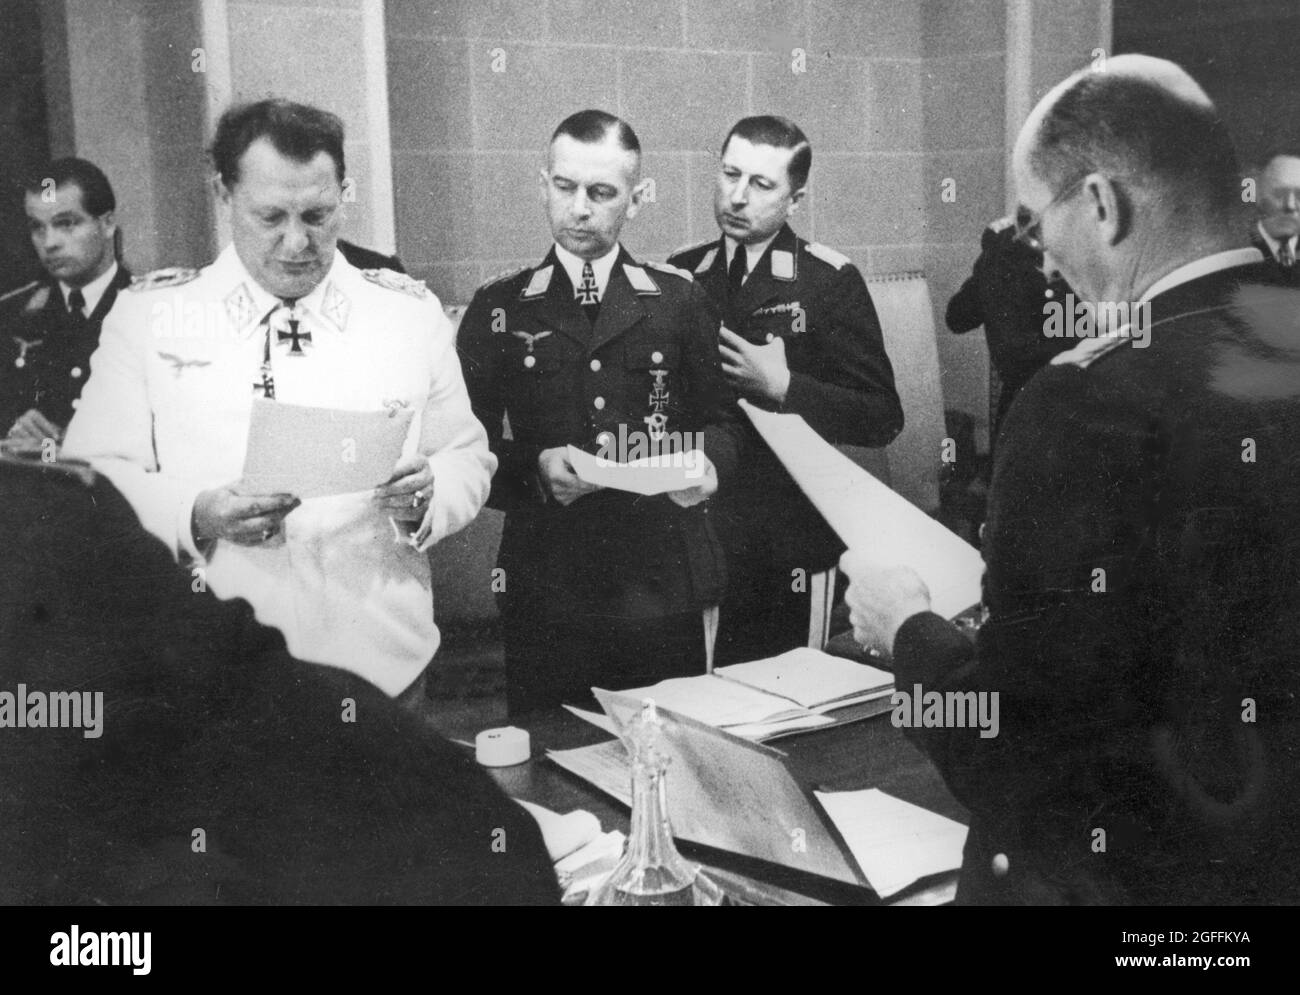 Hermann Göring ha emesso un ordine per le truppe tedesche sul fronte orientale. Visibile da sinistra: maresciallo Hermann Göring , generale Hans Jeschonnek, generale otto von Waldau, generale Gustaw Kastner-Kirdorf. Foto Stock